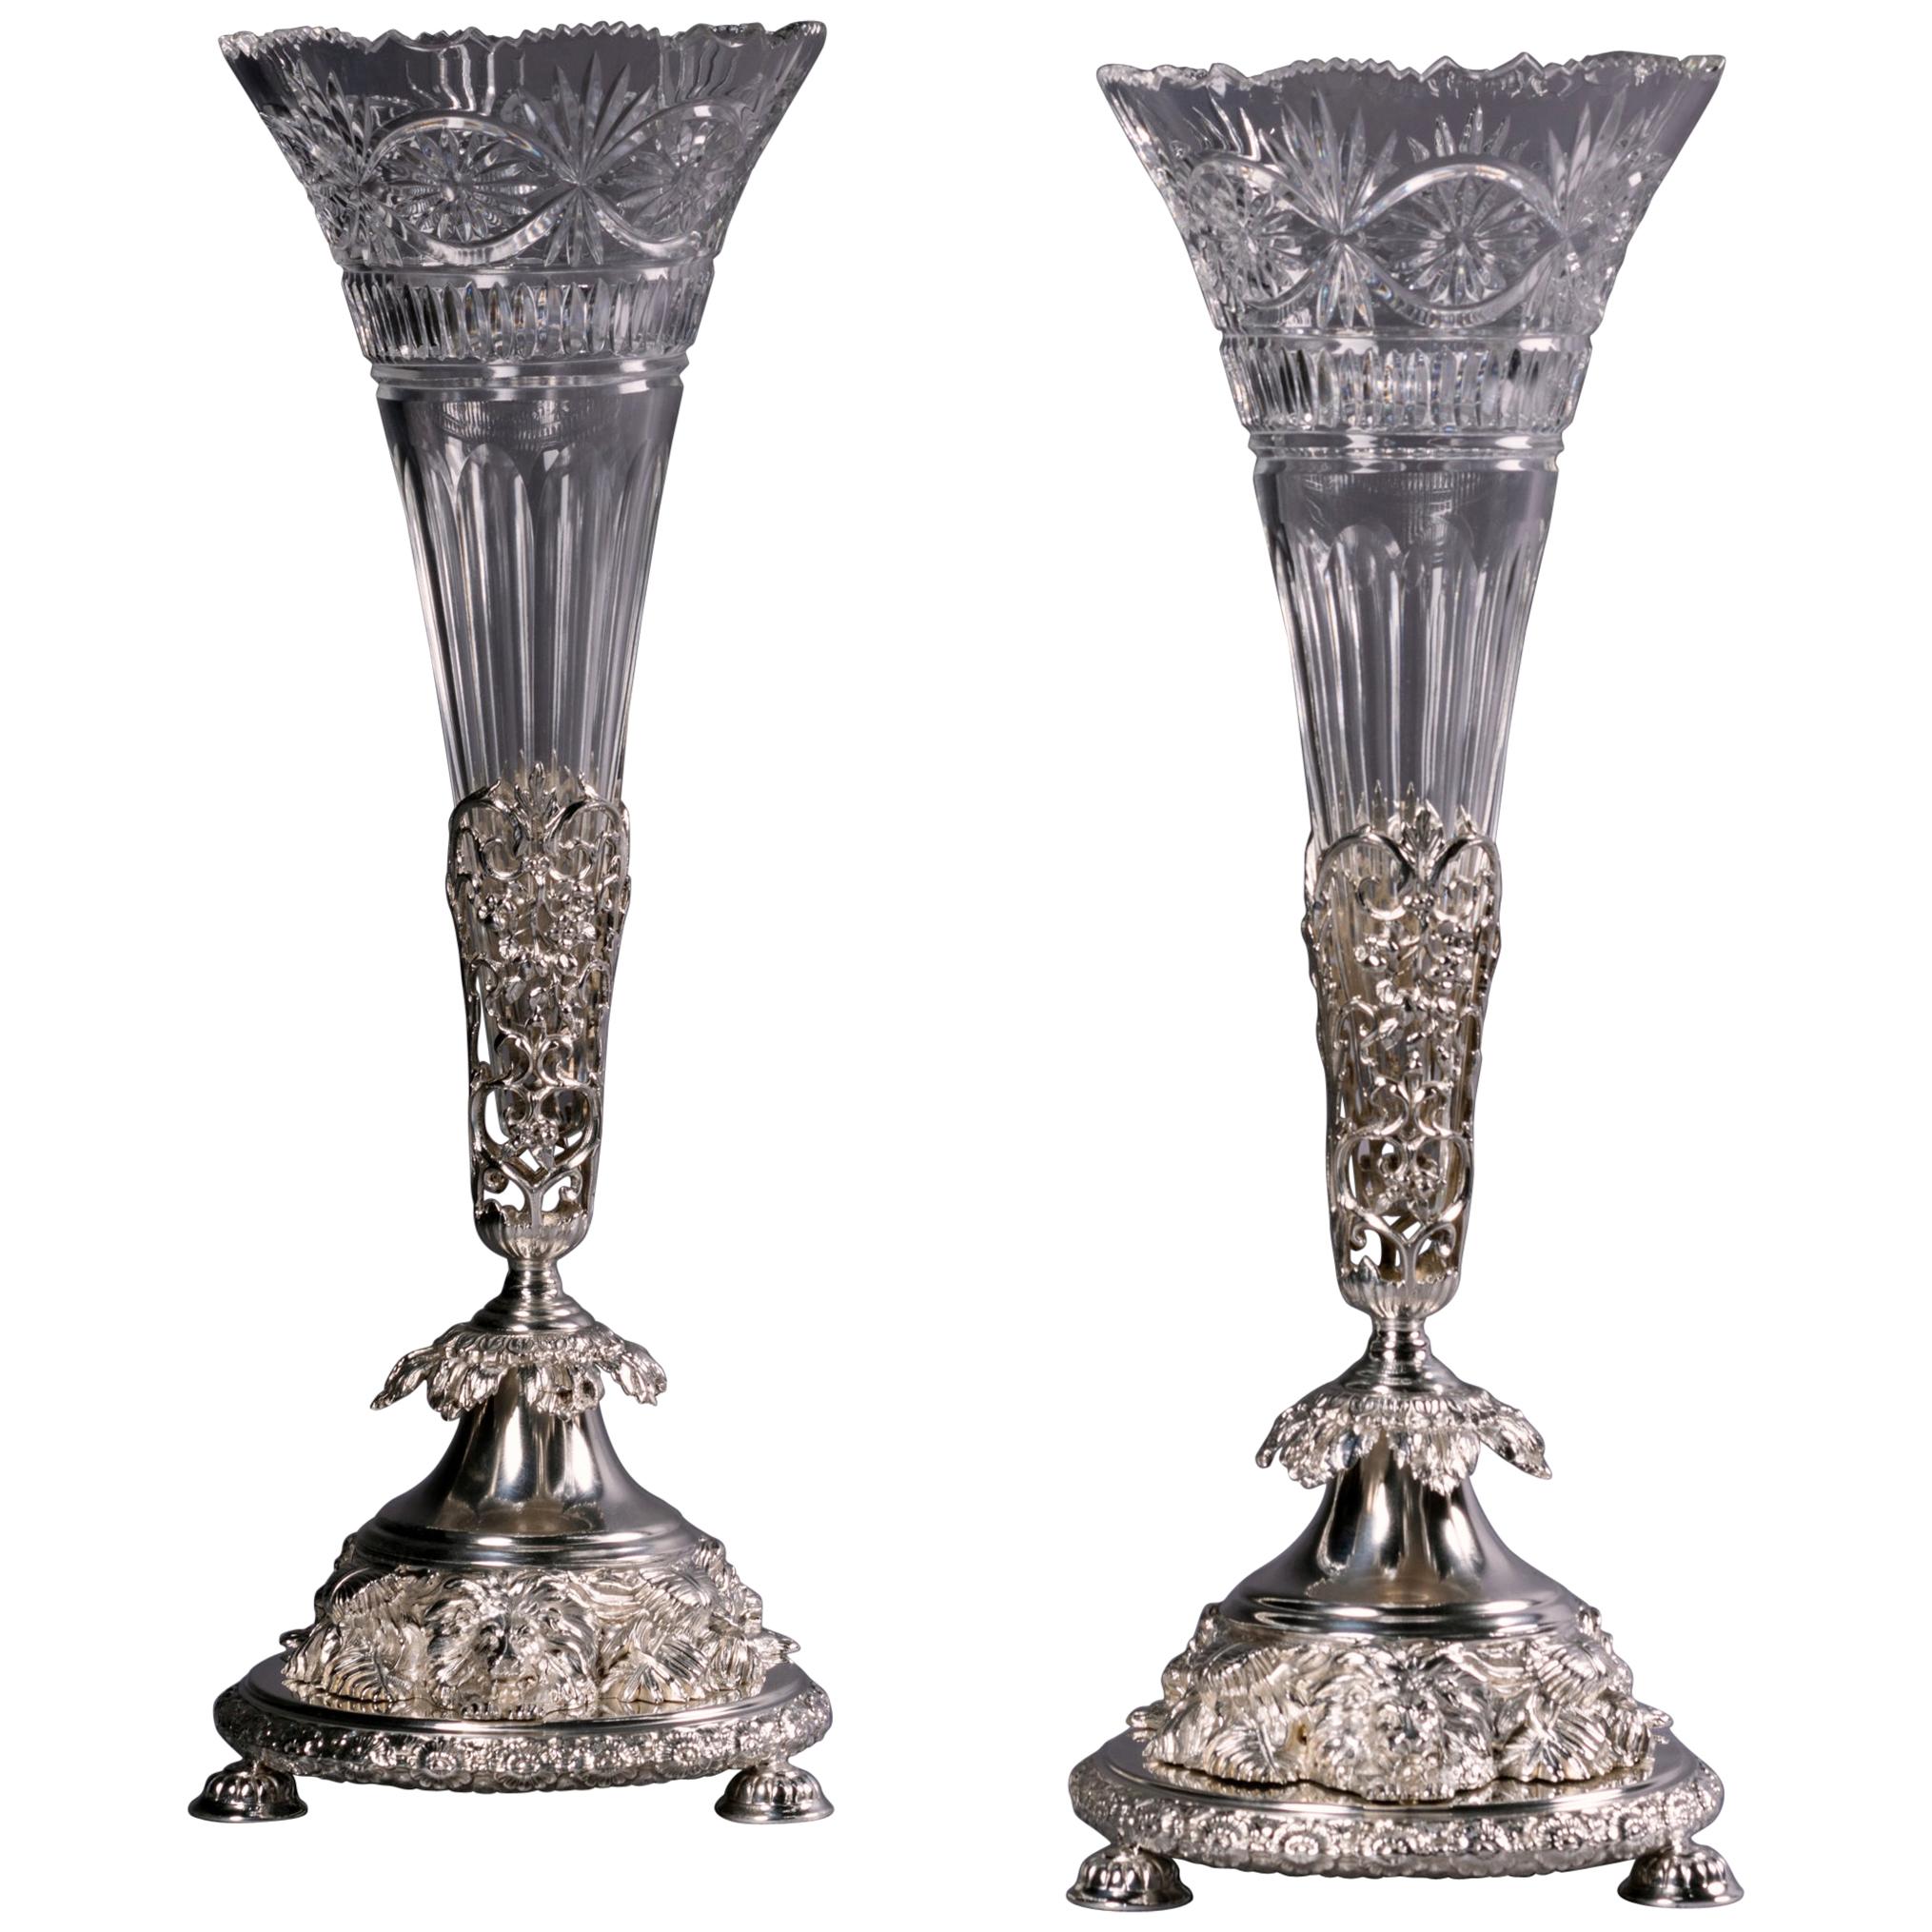 Joseph Rodgers & Sons Vasen und Gefäße